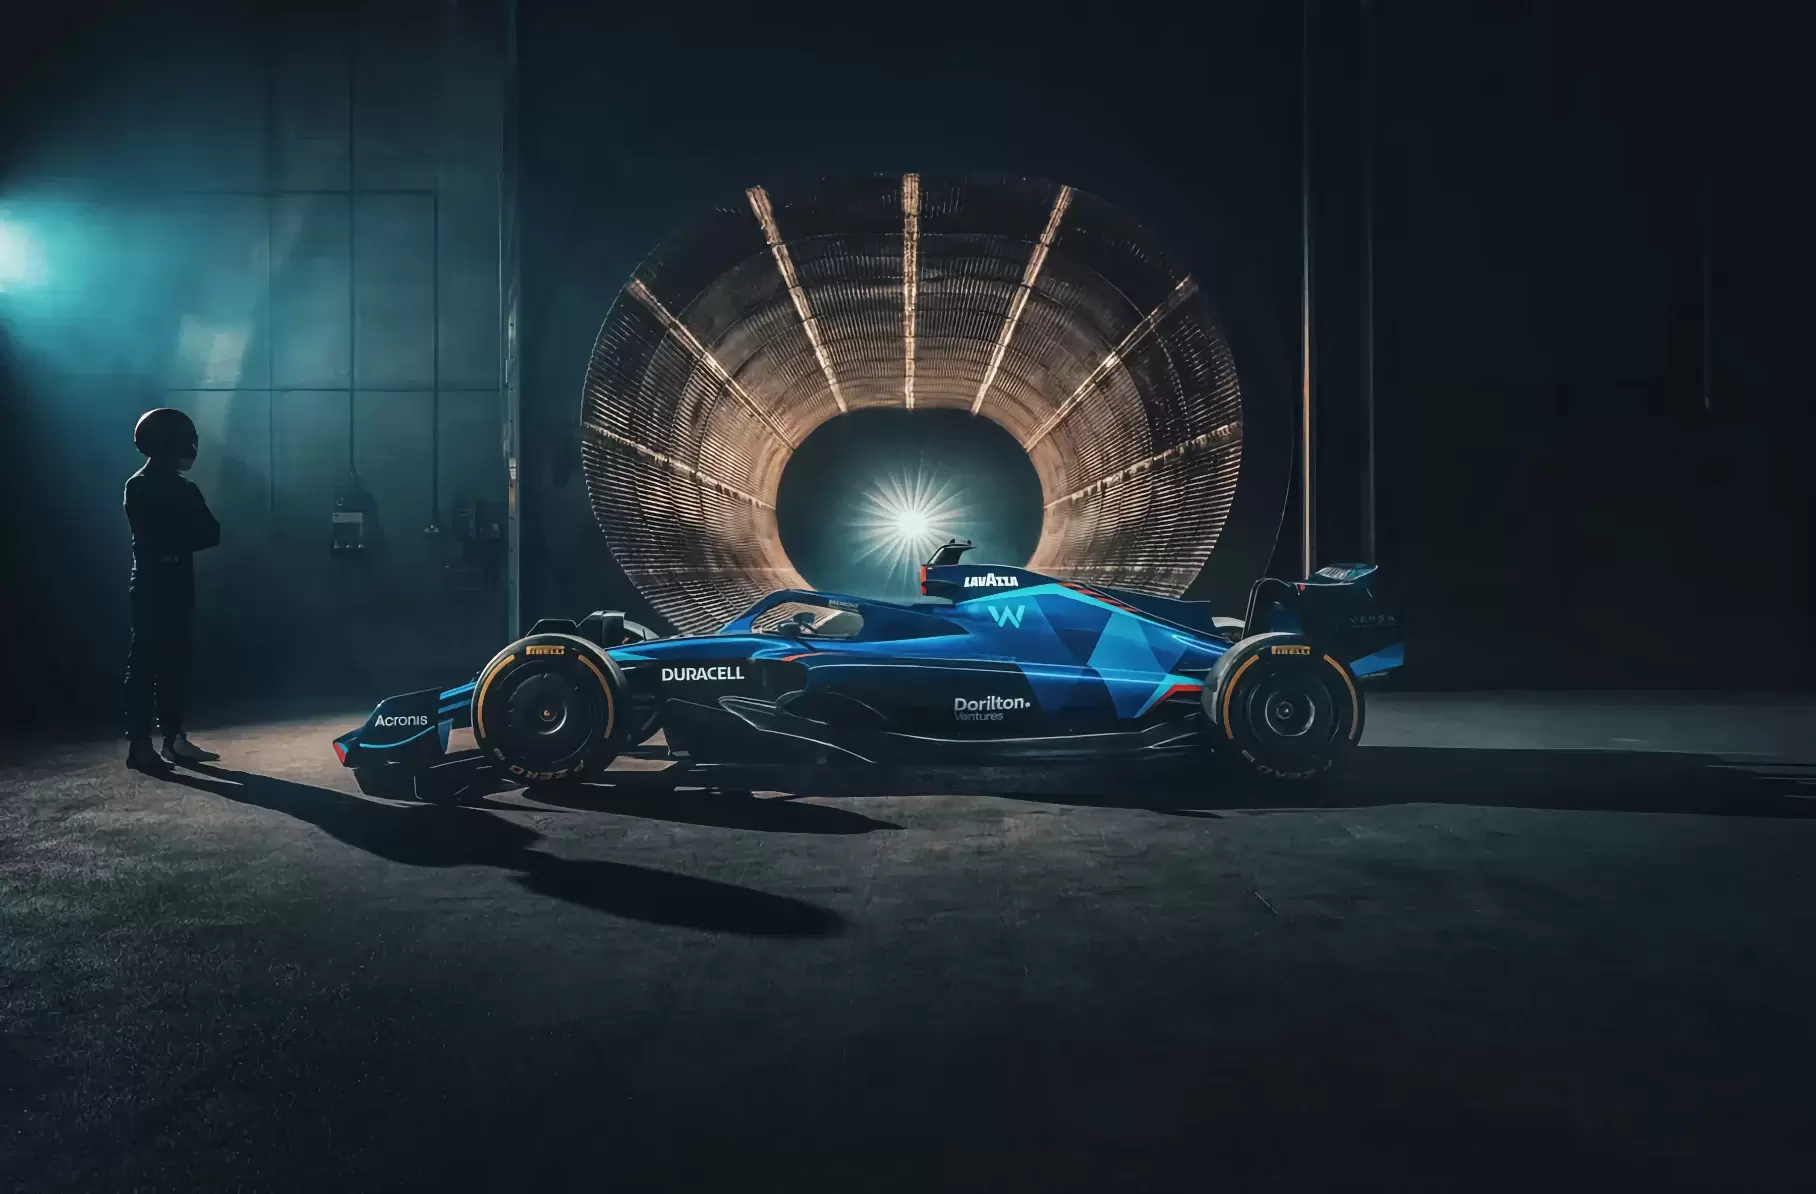 Представлены новые болиды Формулы-1 AlphaTauri и Williams Racing